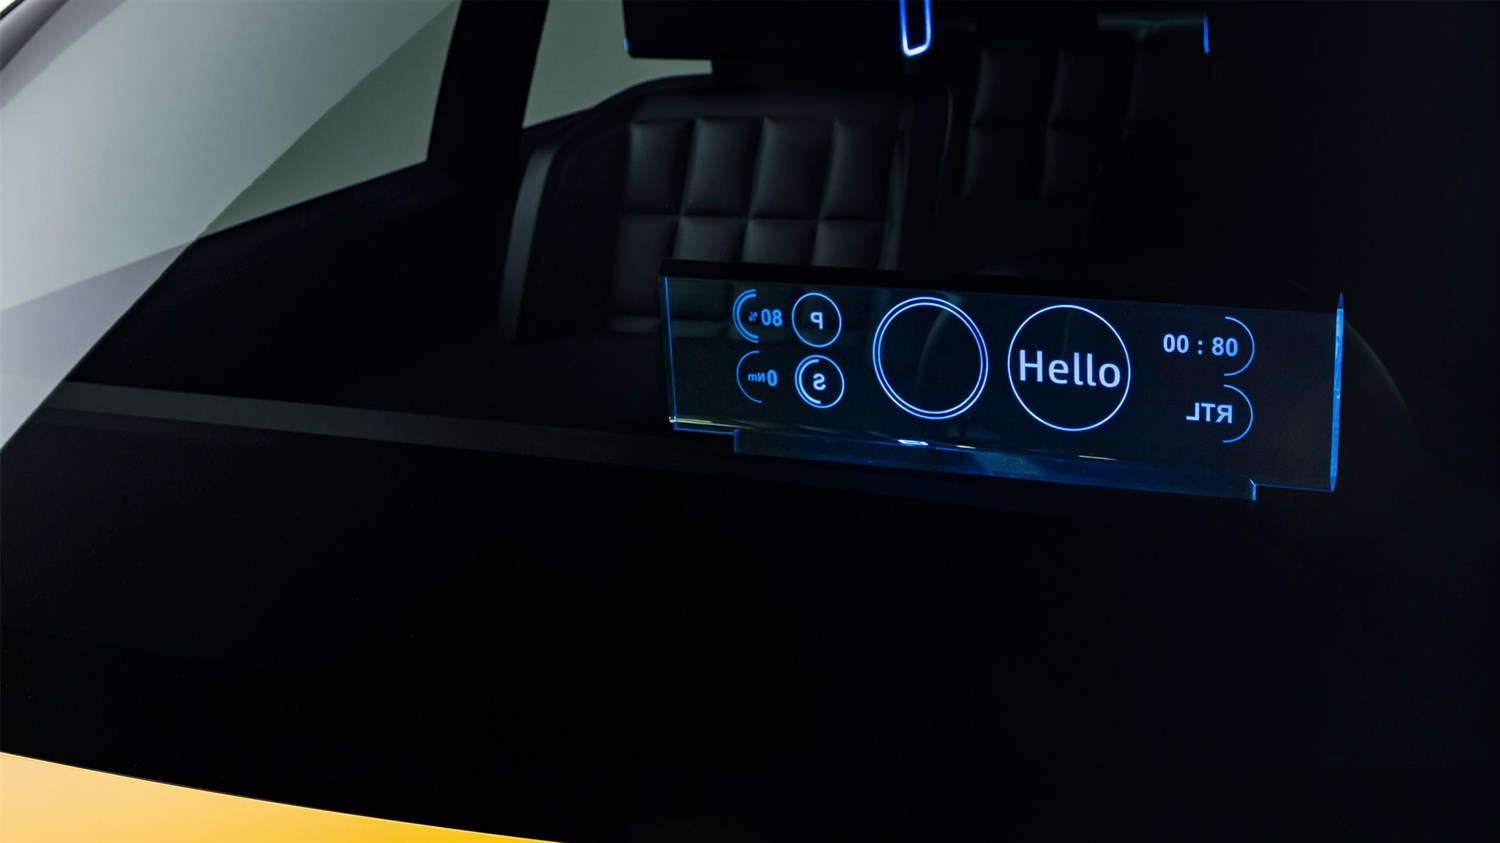 inovativno obazinjenje in materiali - Renault 5 E-Tech electric prototip